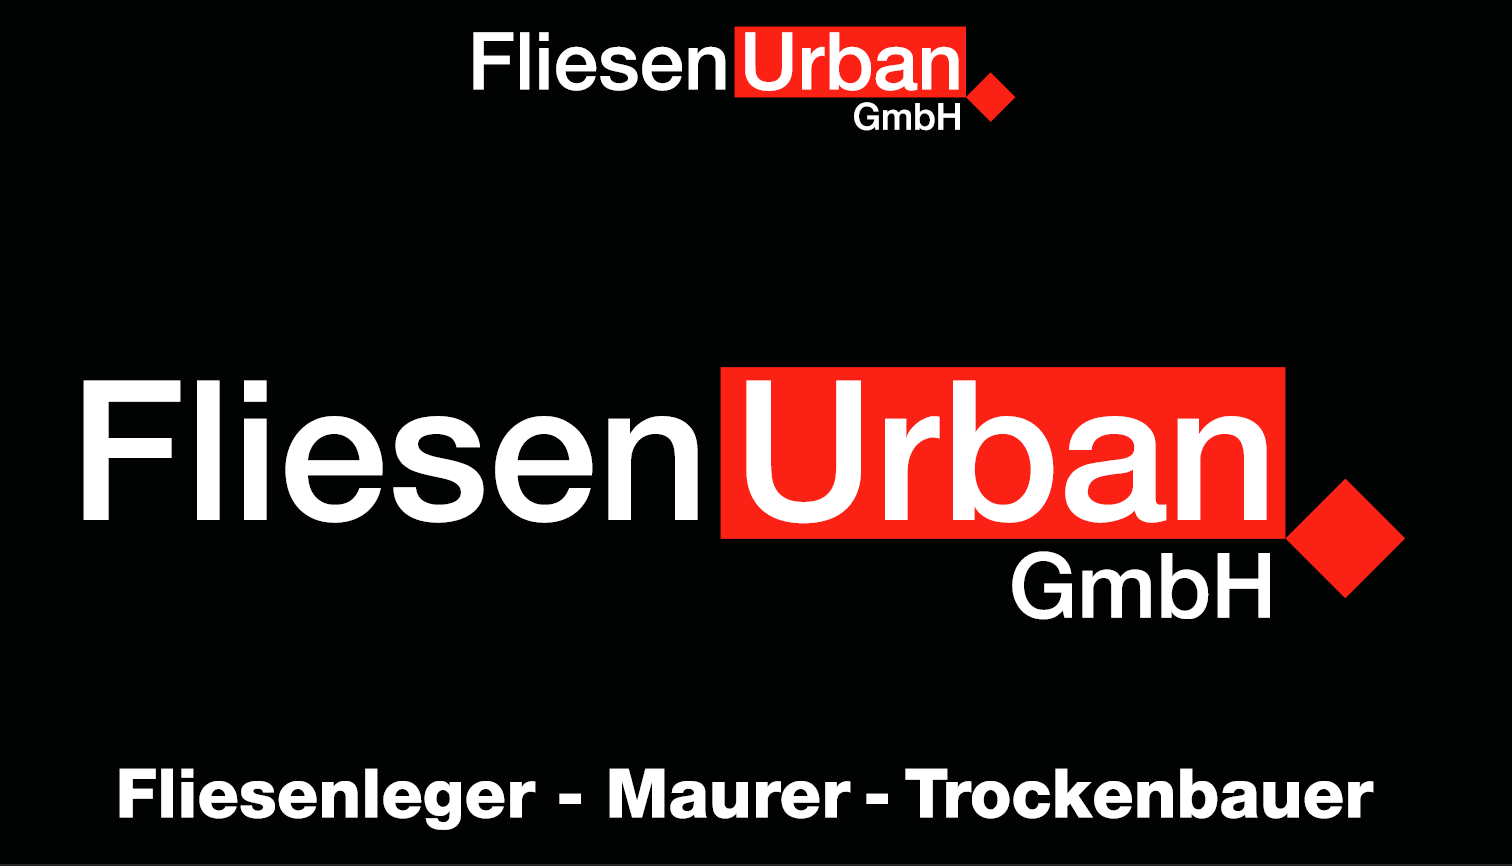 Fliesen Urban GmbH